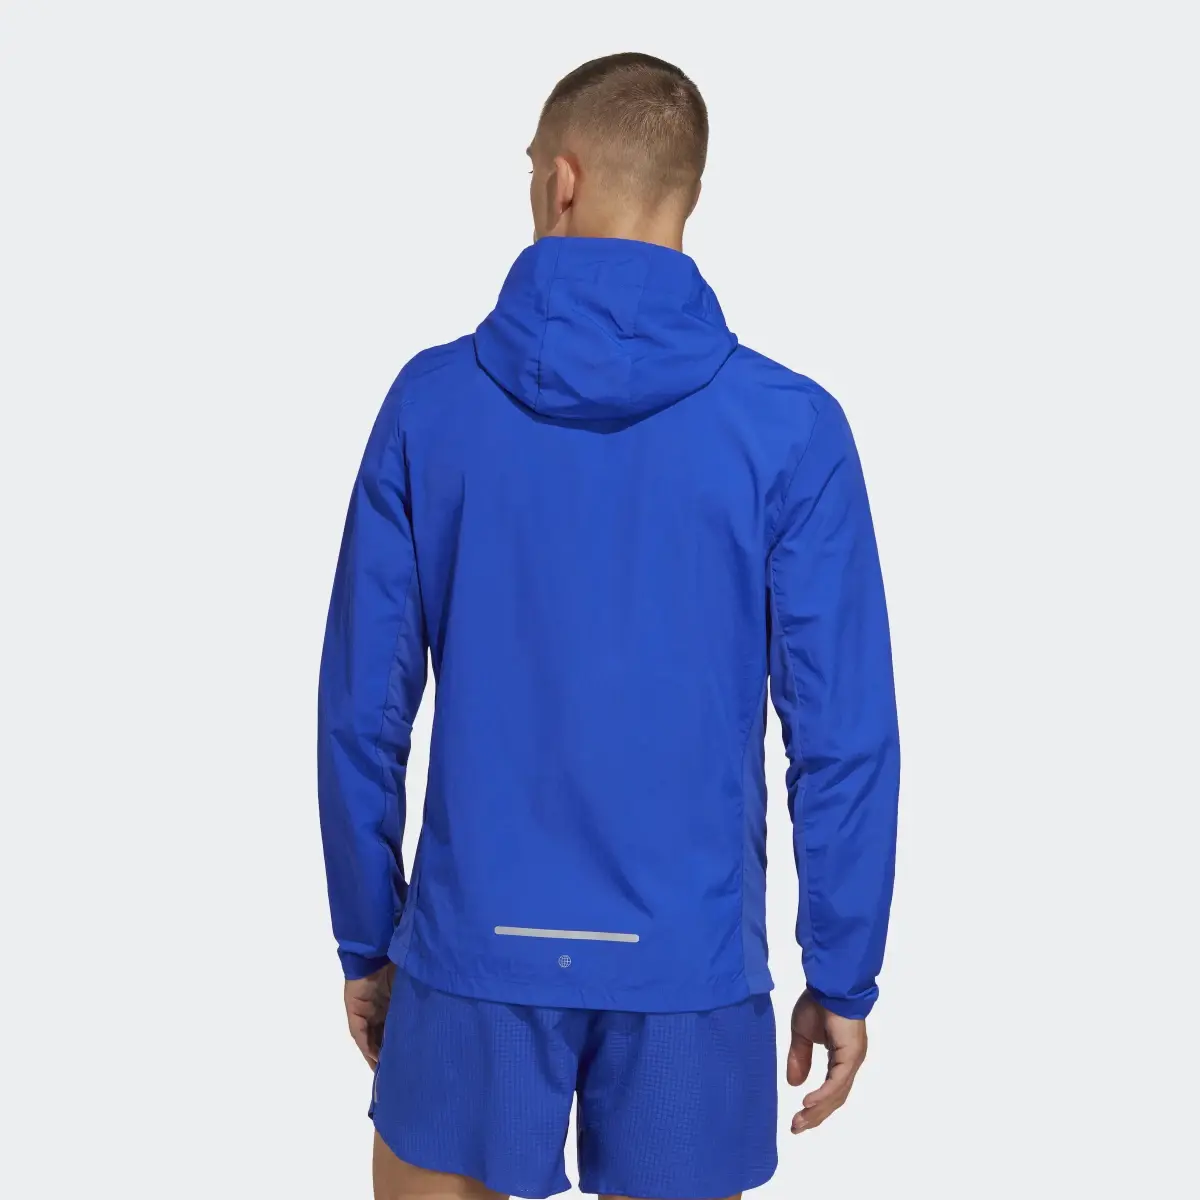 Adidas Marathon Warm-Up Jacket. 3